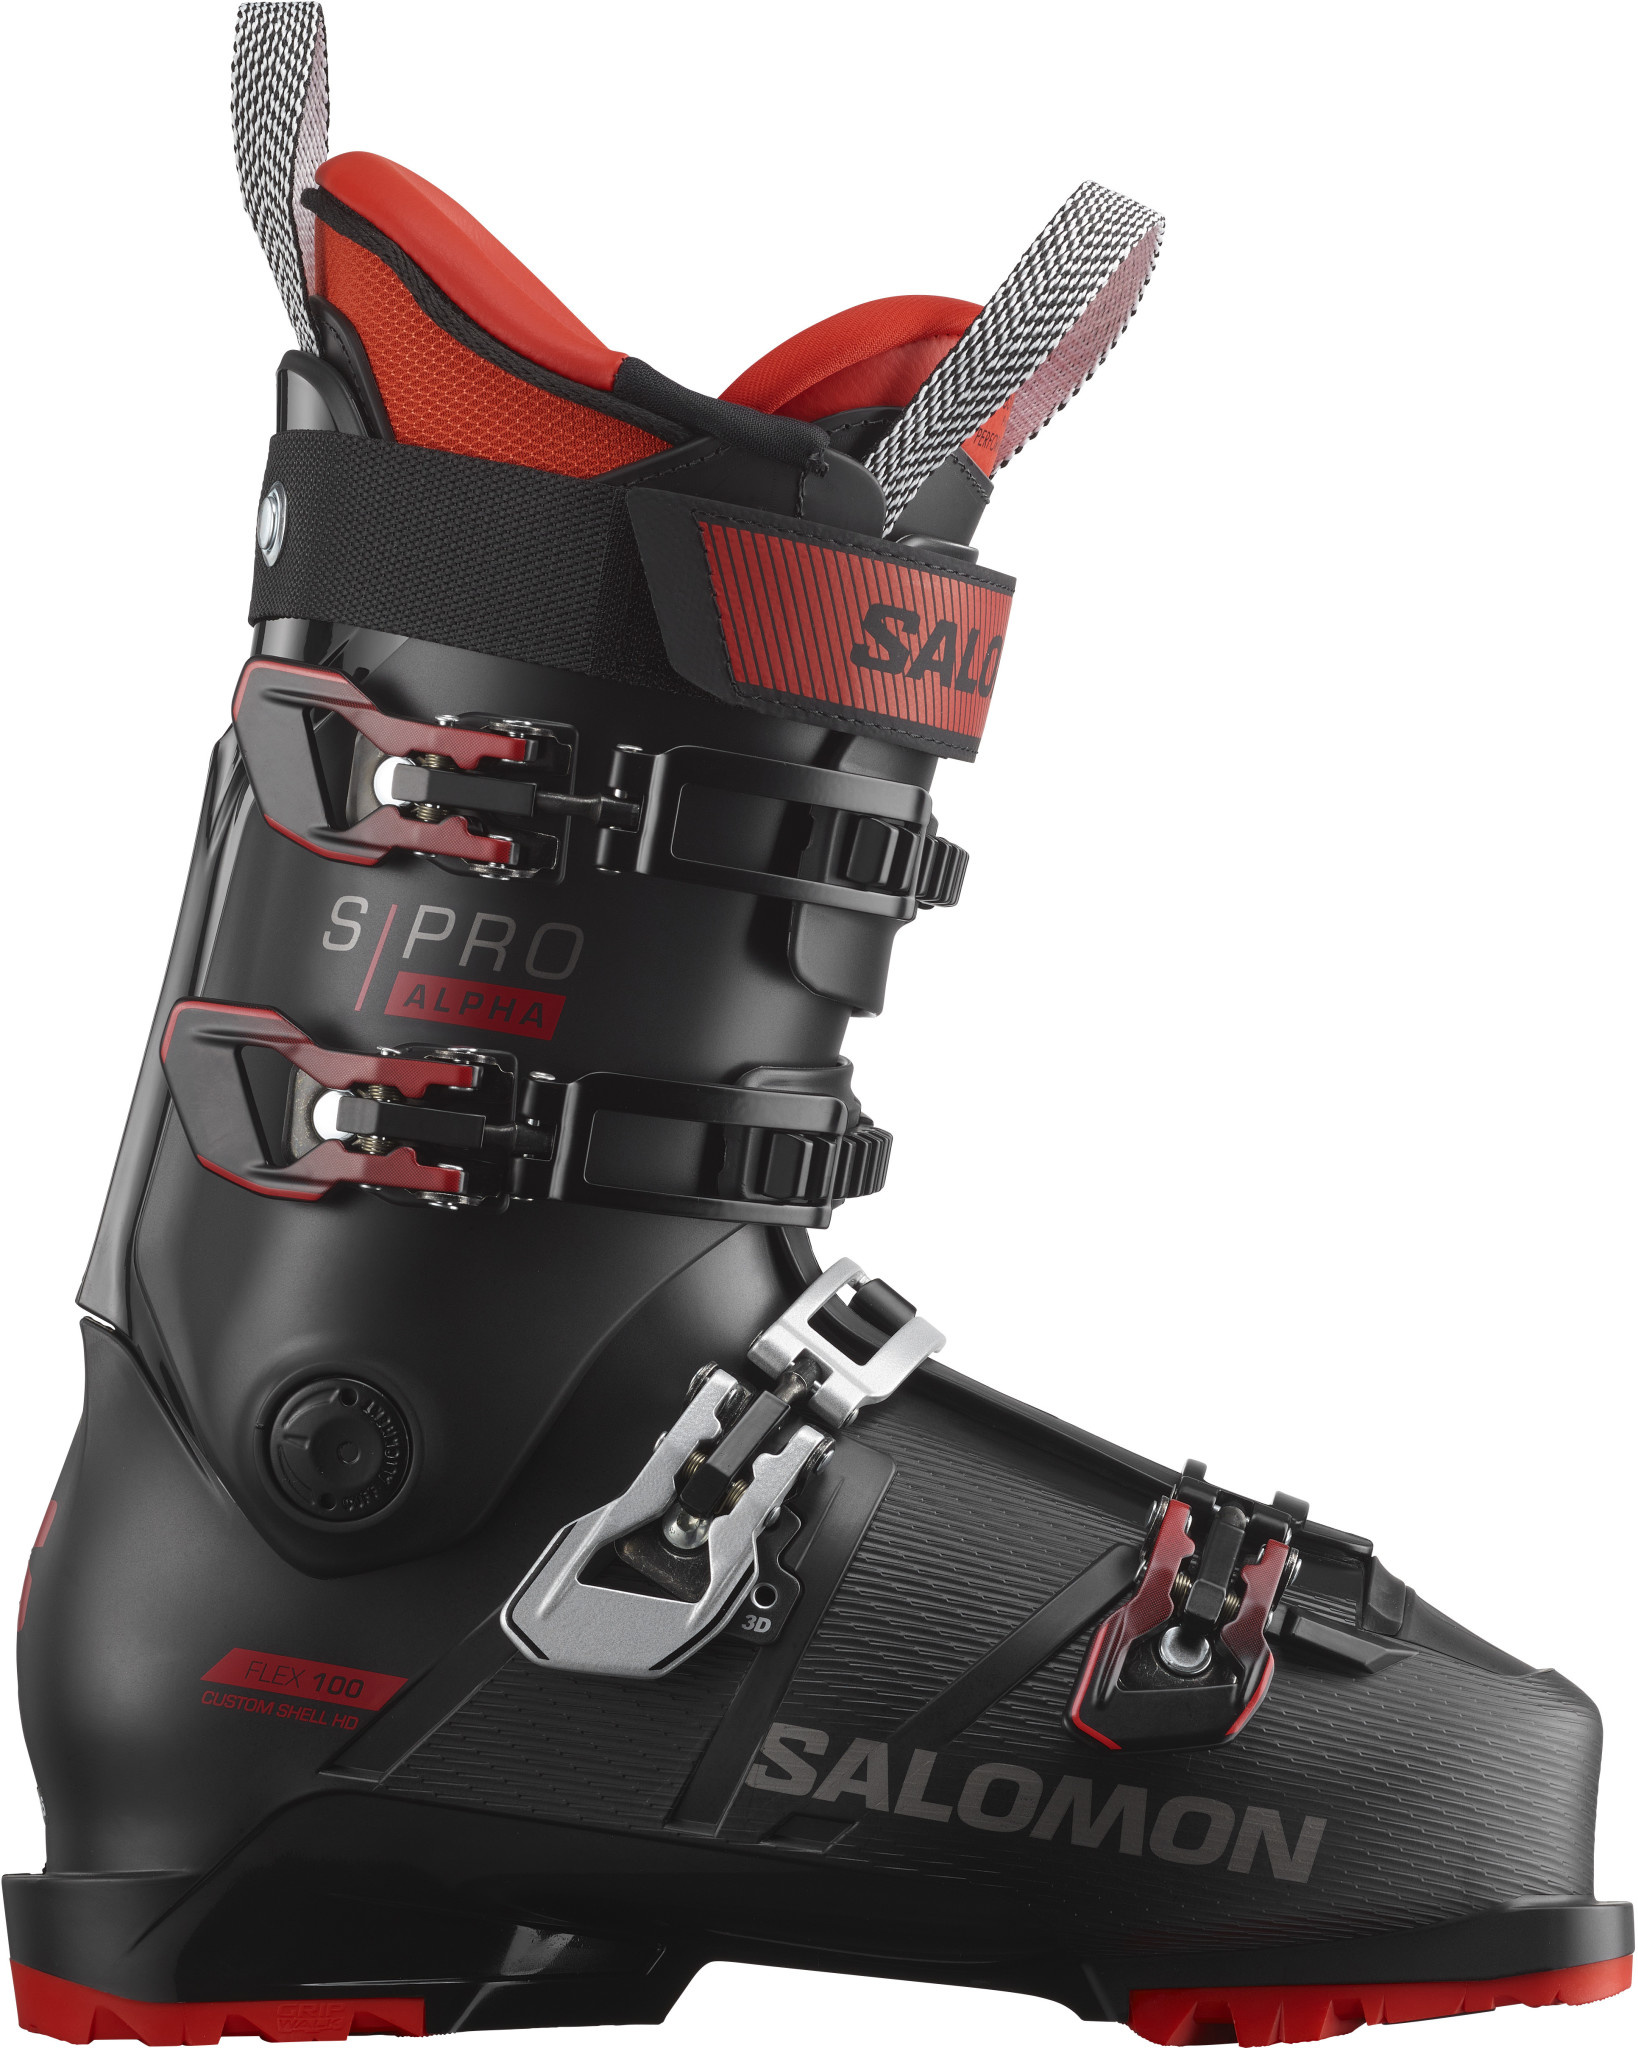 grøntsager Beundringsværdig Anerkendelse Salomon S/Pro Alpha 100 Ski Boot - Finches Emporium